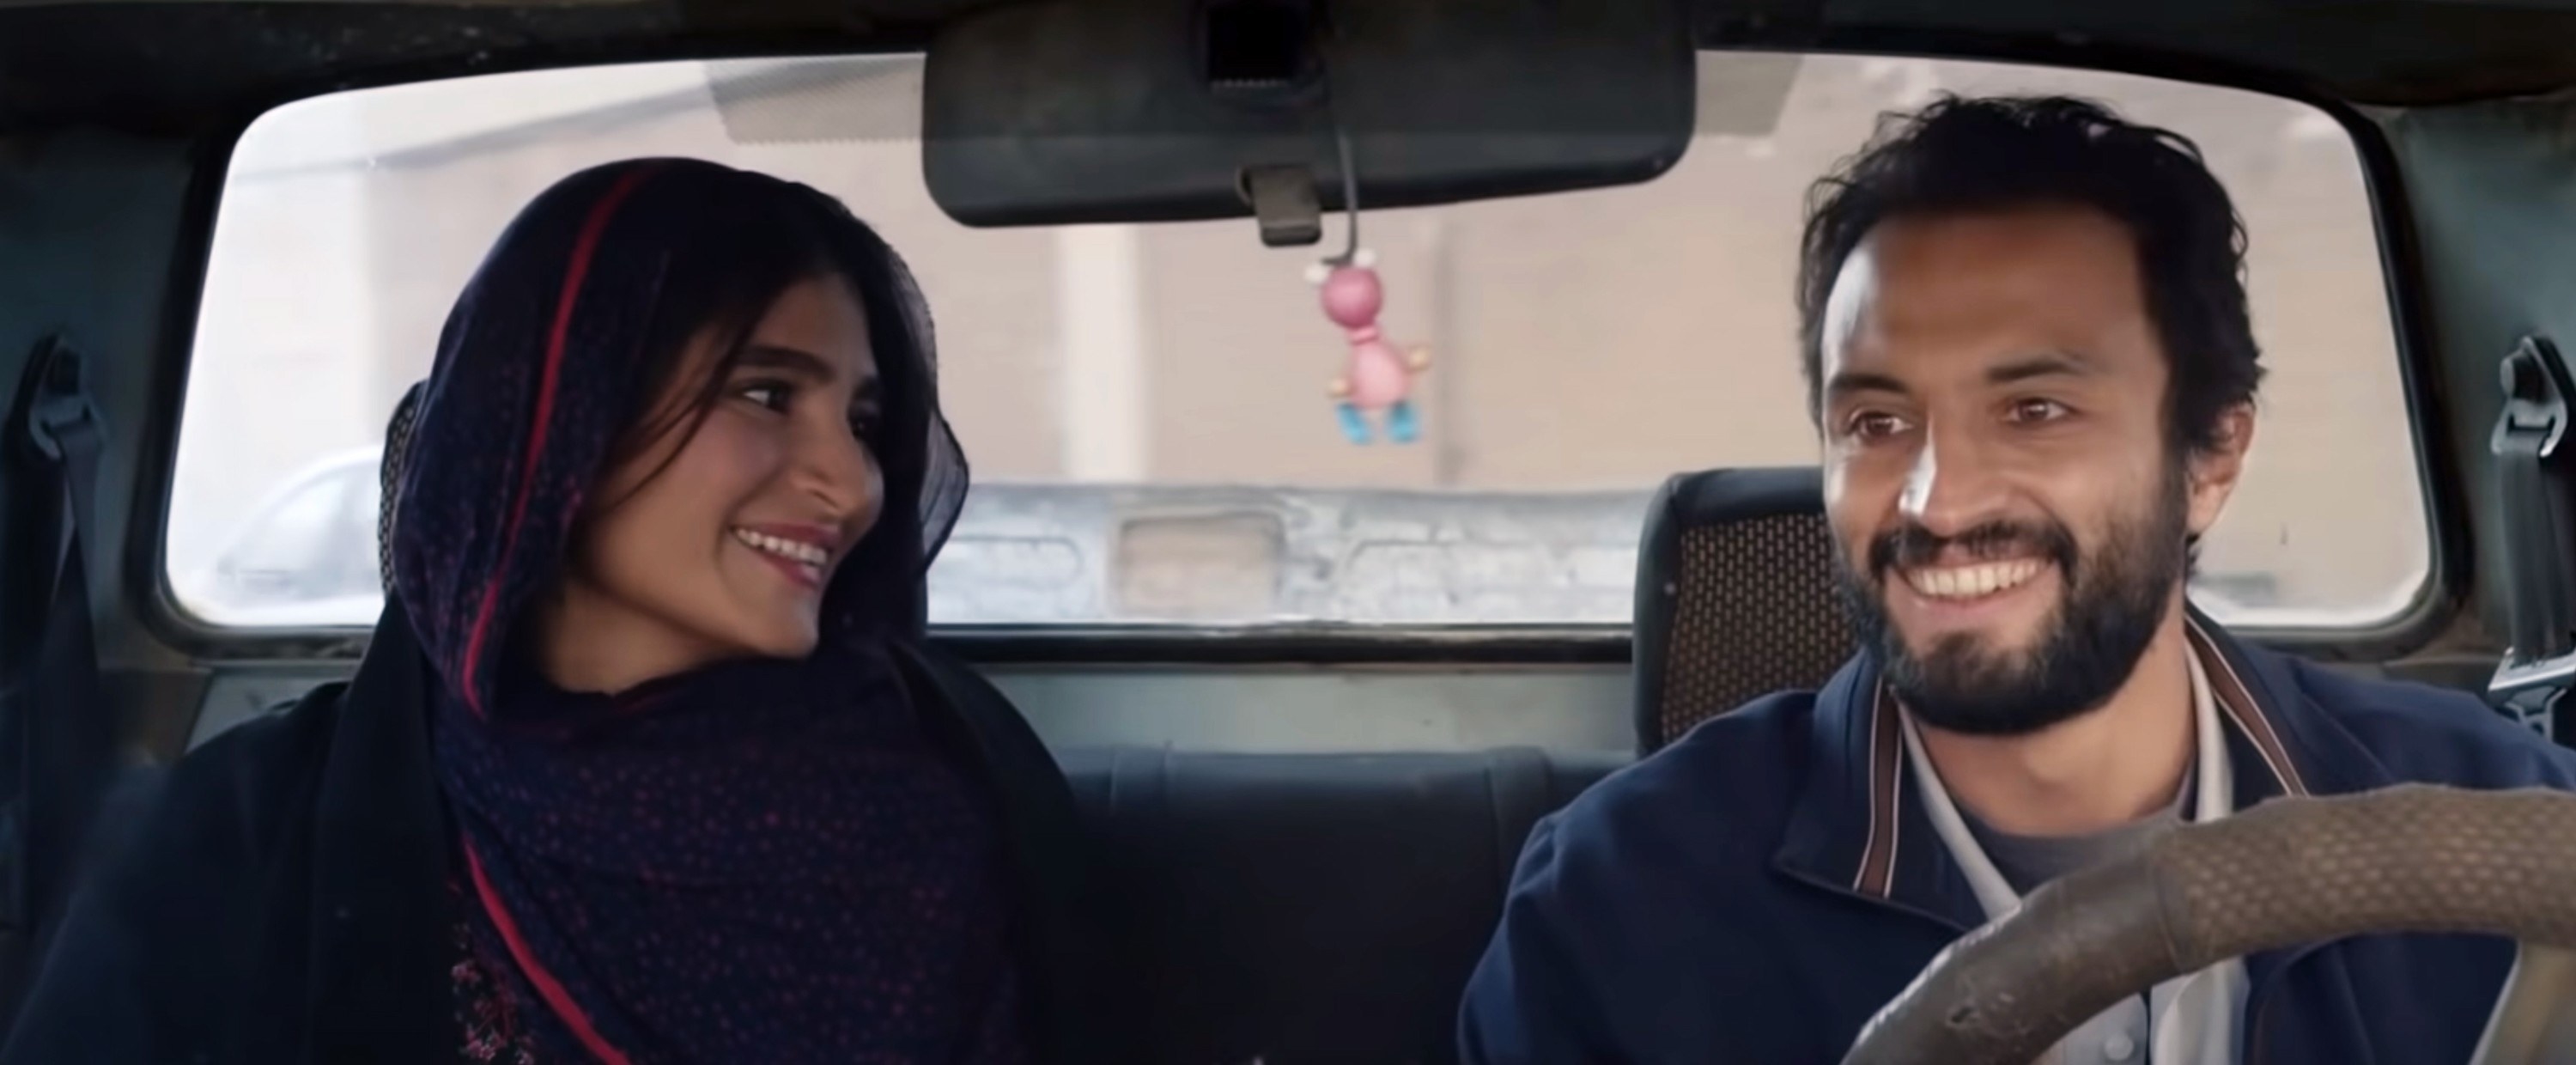 Sahar Goldust and Amir Jadidi smile in a car